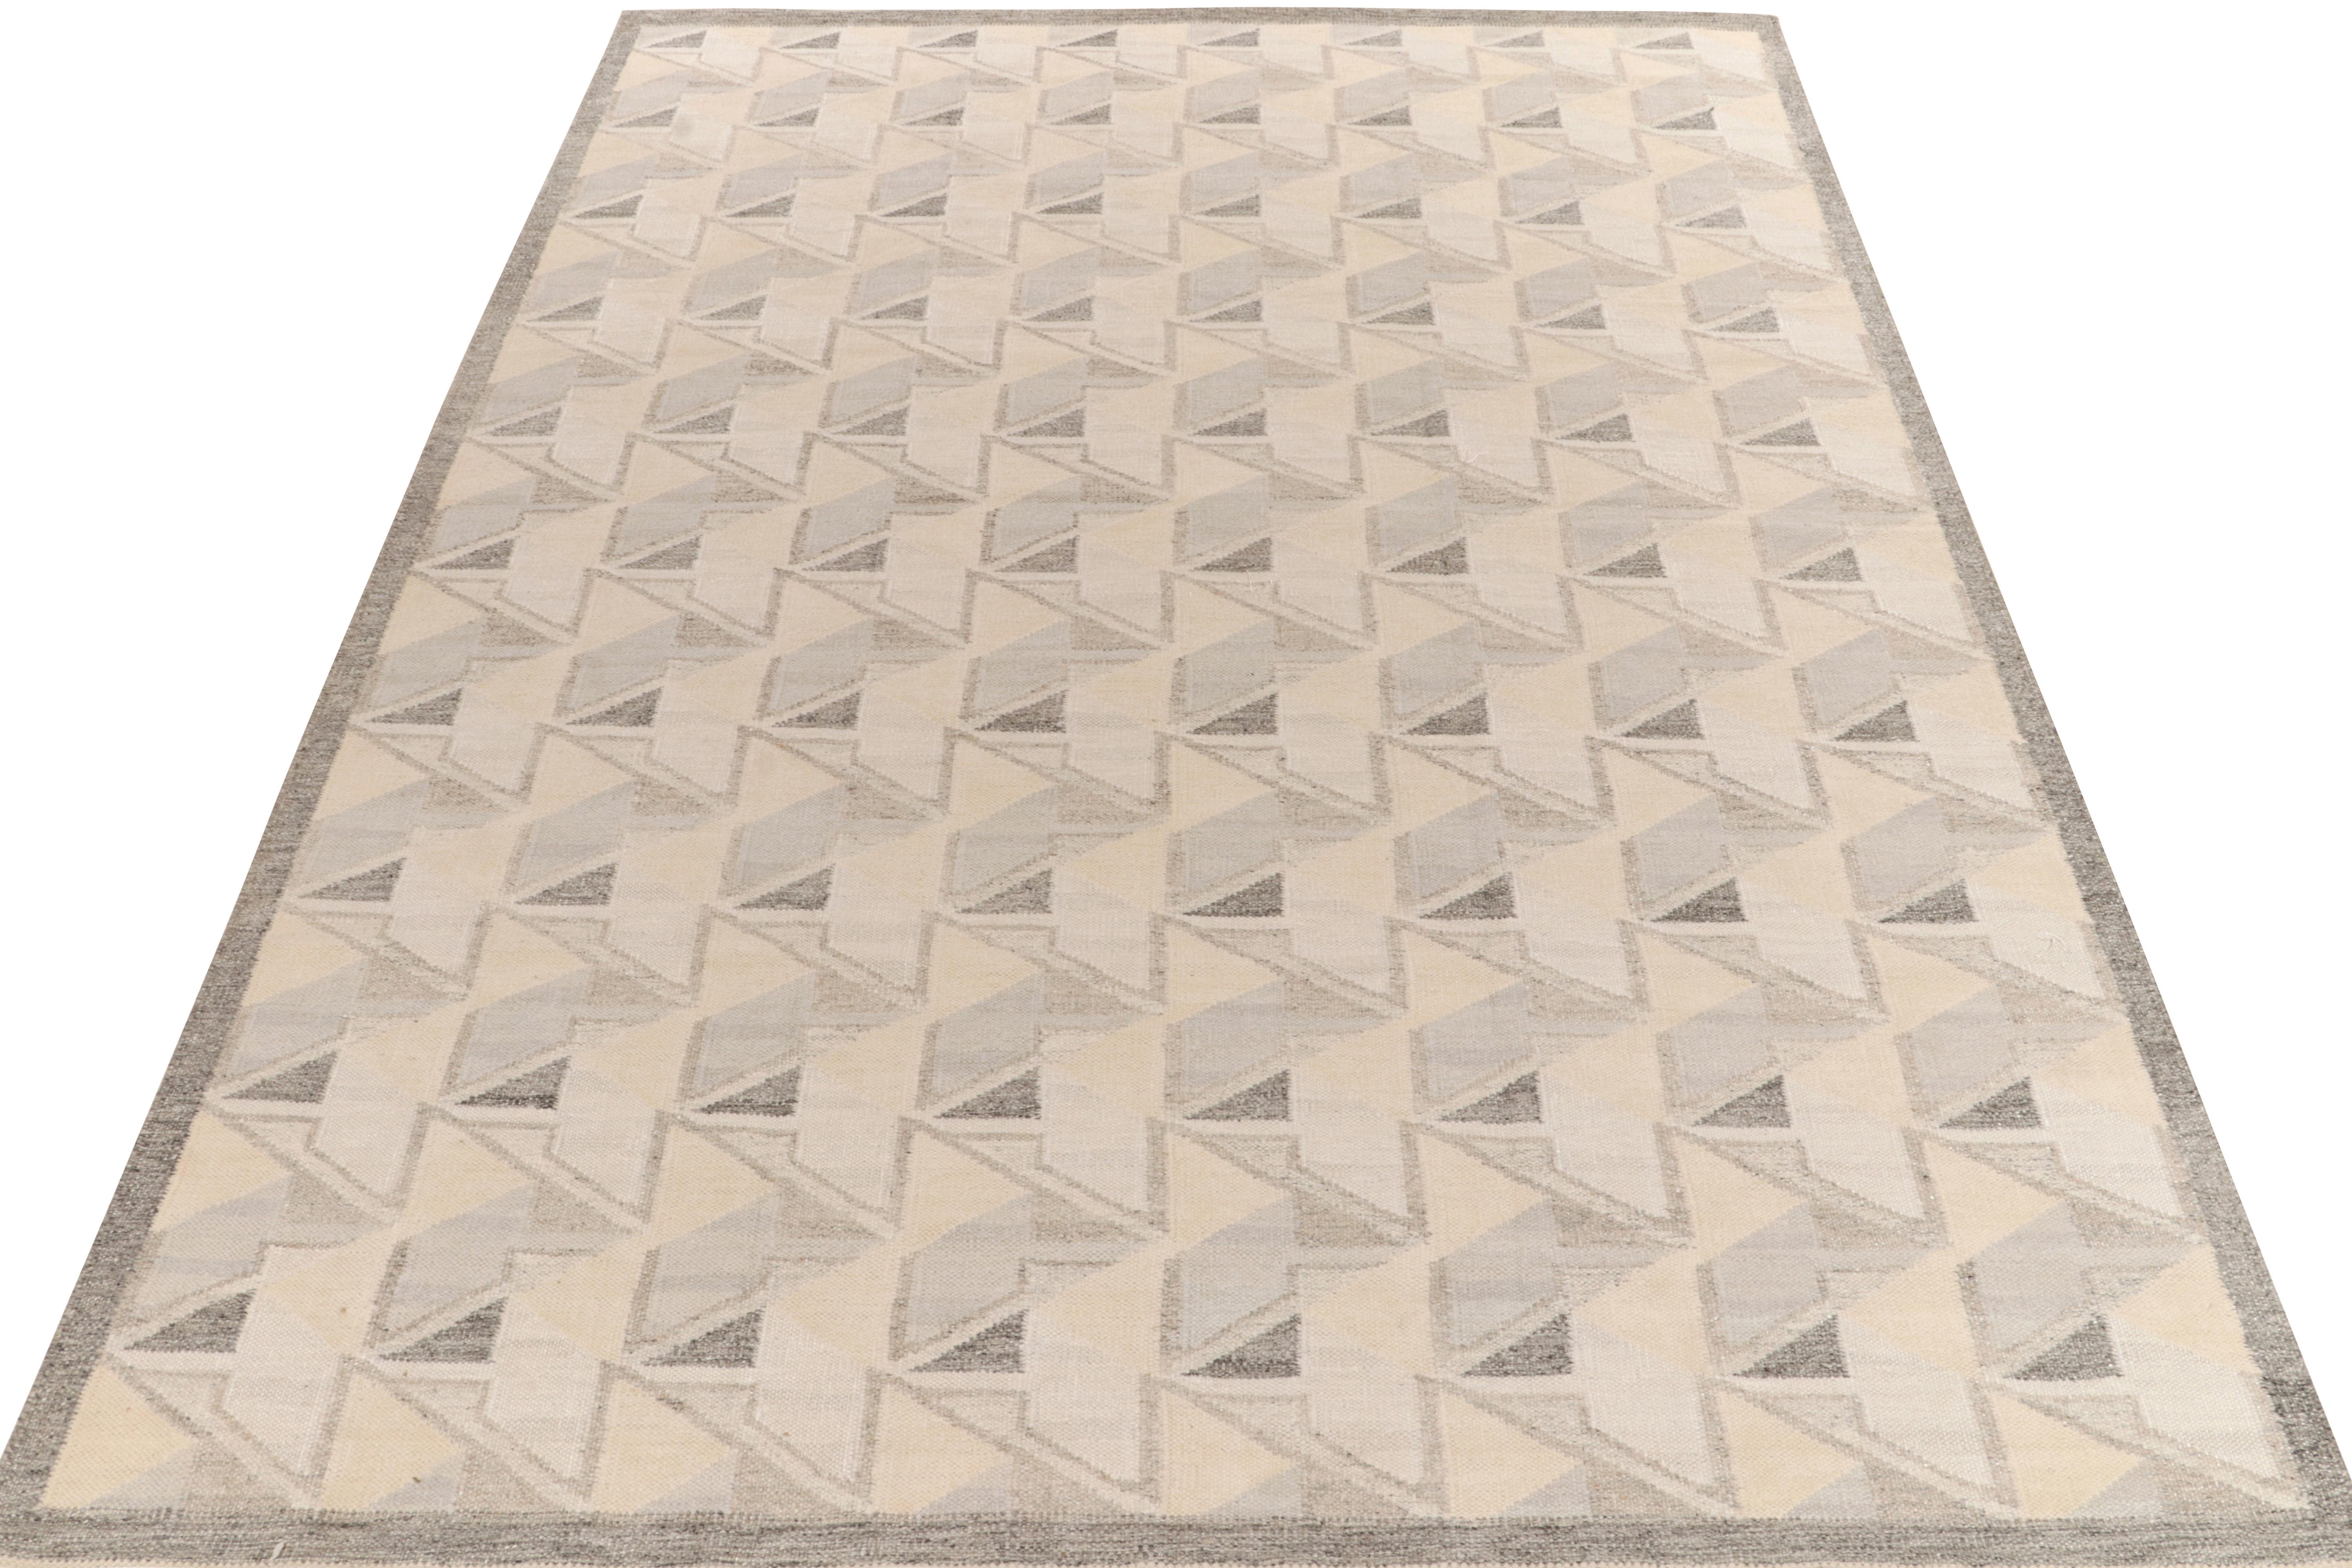 Le kilim de style scandinave de Rug & Kilim est issu de notre célèbre collection de tissage plat. Ce tapis 10x14 bénéficie de la finesse de l'esthétique suédoise avec un motif géométrique dextre qui donne une impression de 3D. La gamme de couleurs